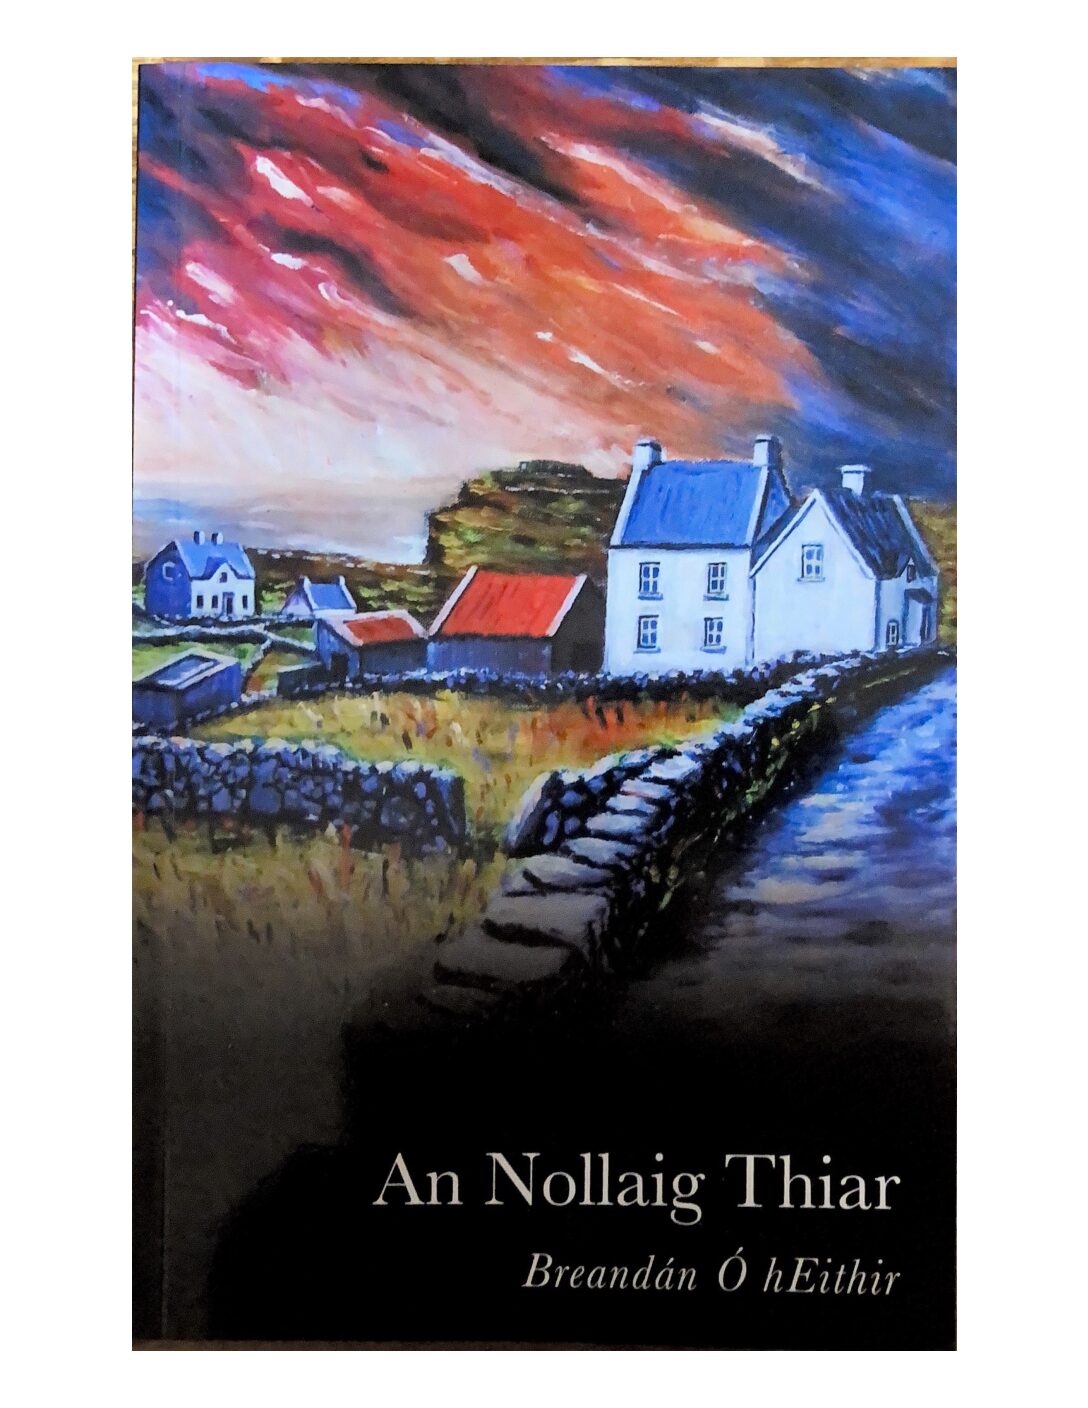 An Nollaig Thiar by Breandán Ó hEithir